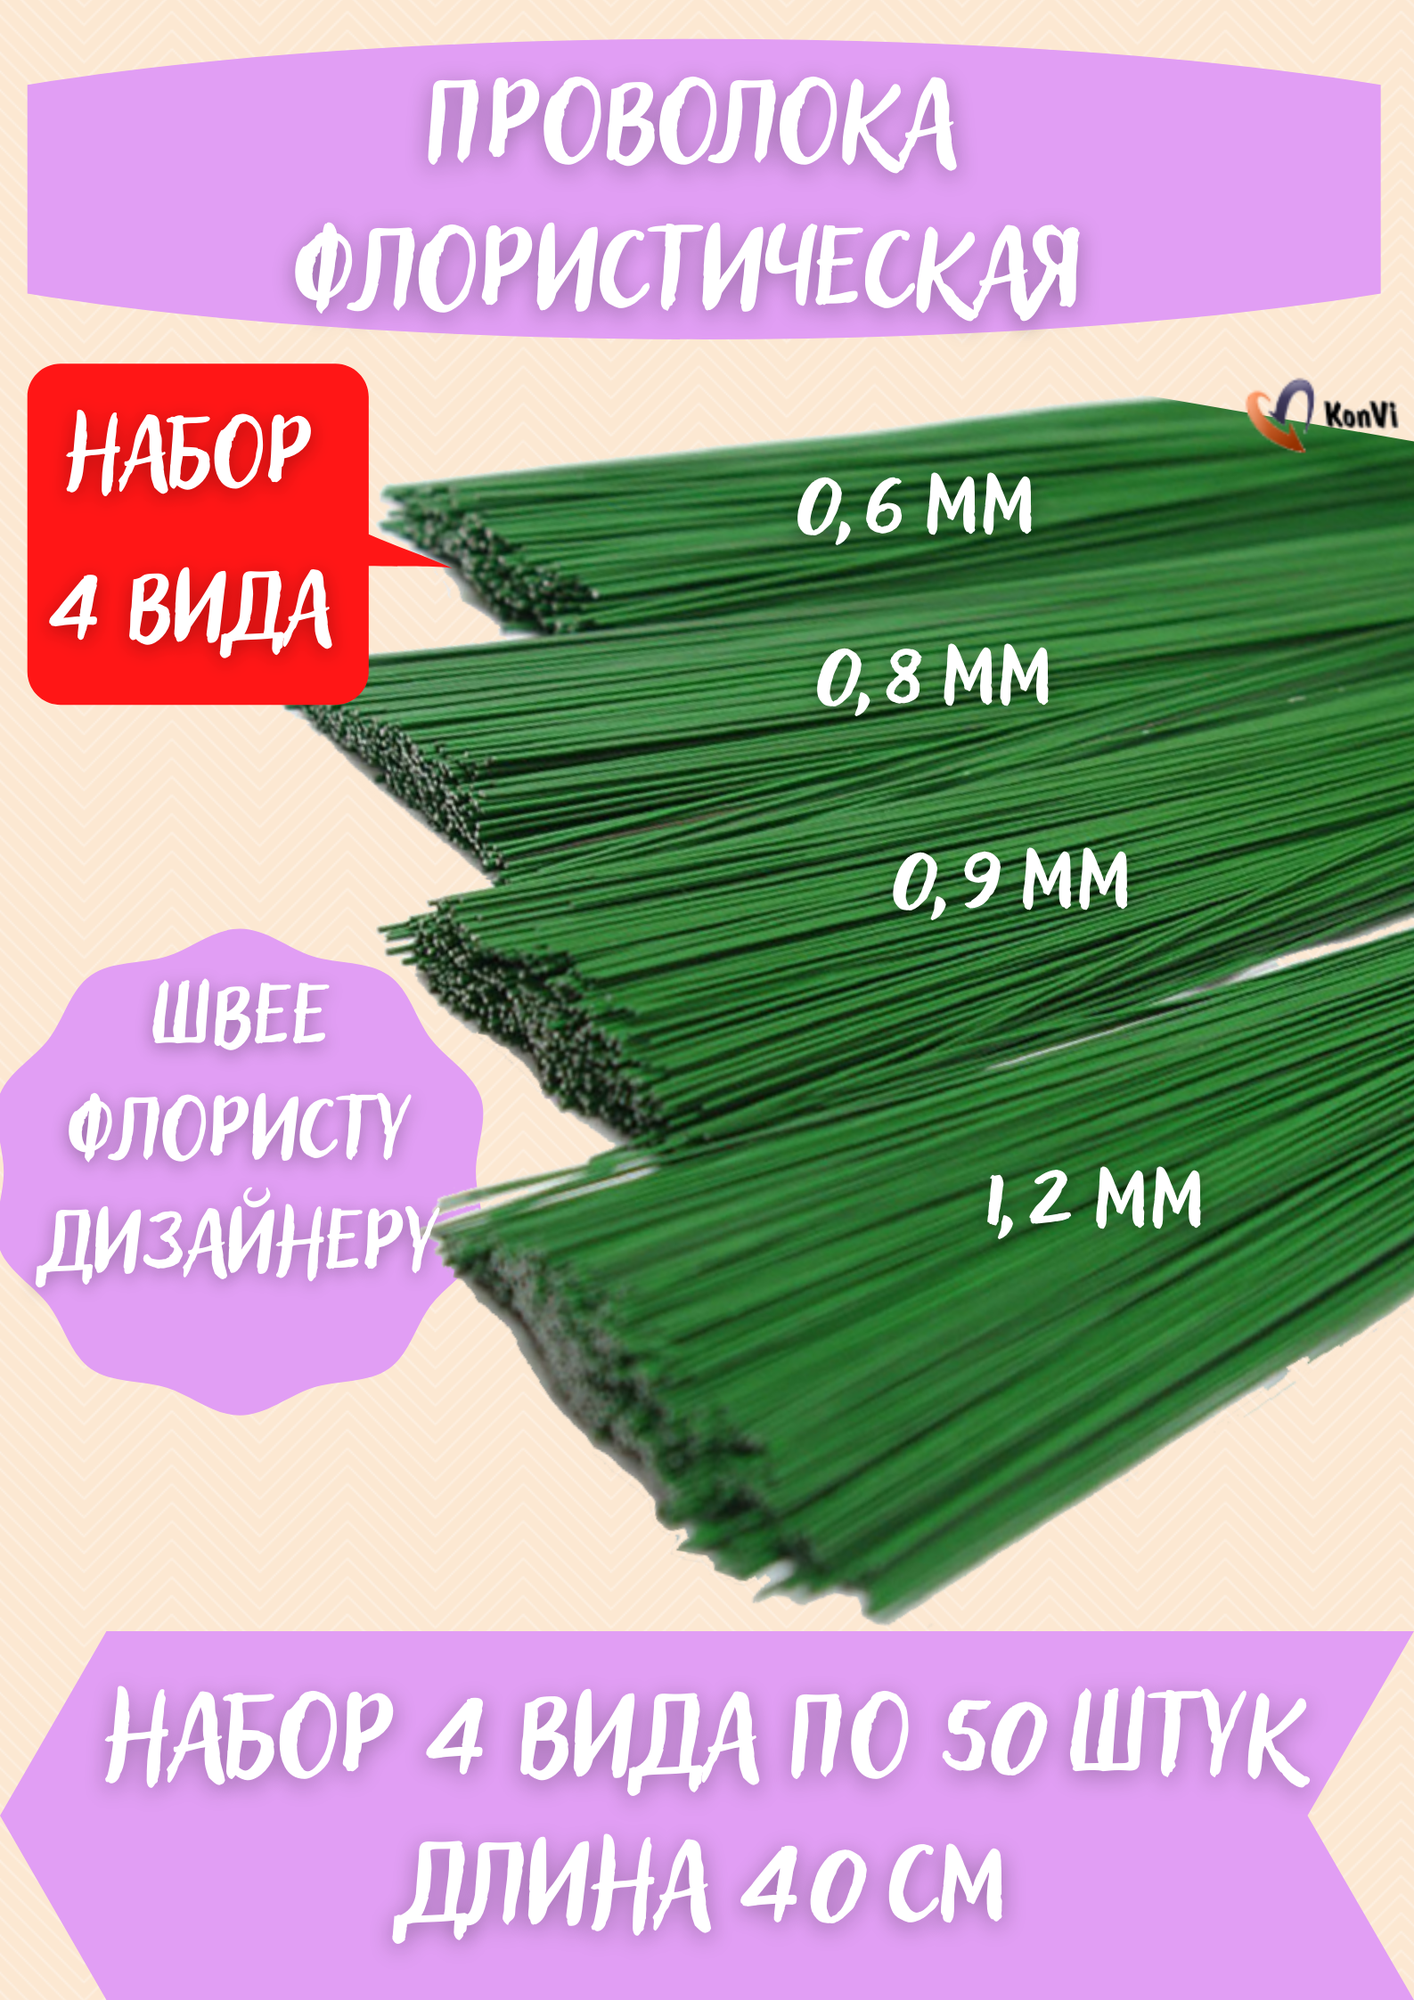 Проволока герберная зеленая набор д 0.6, 0.8, 0.9, 1.2мм по 50шт